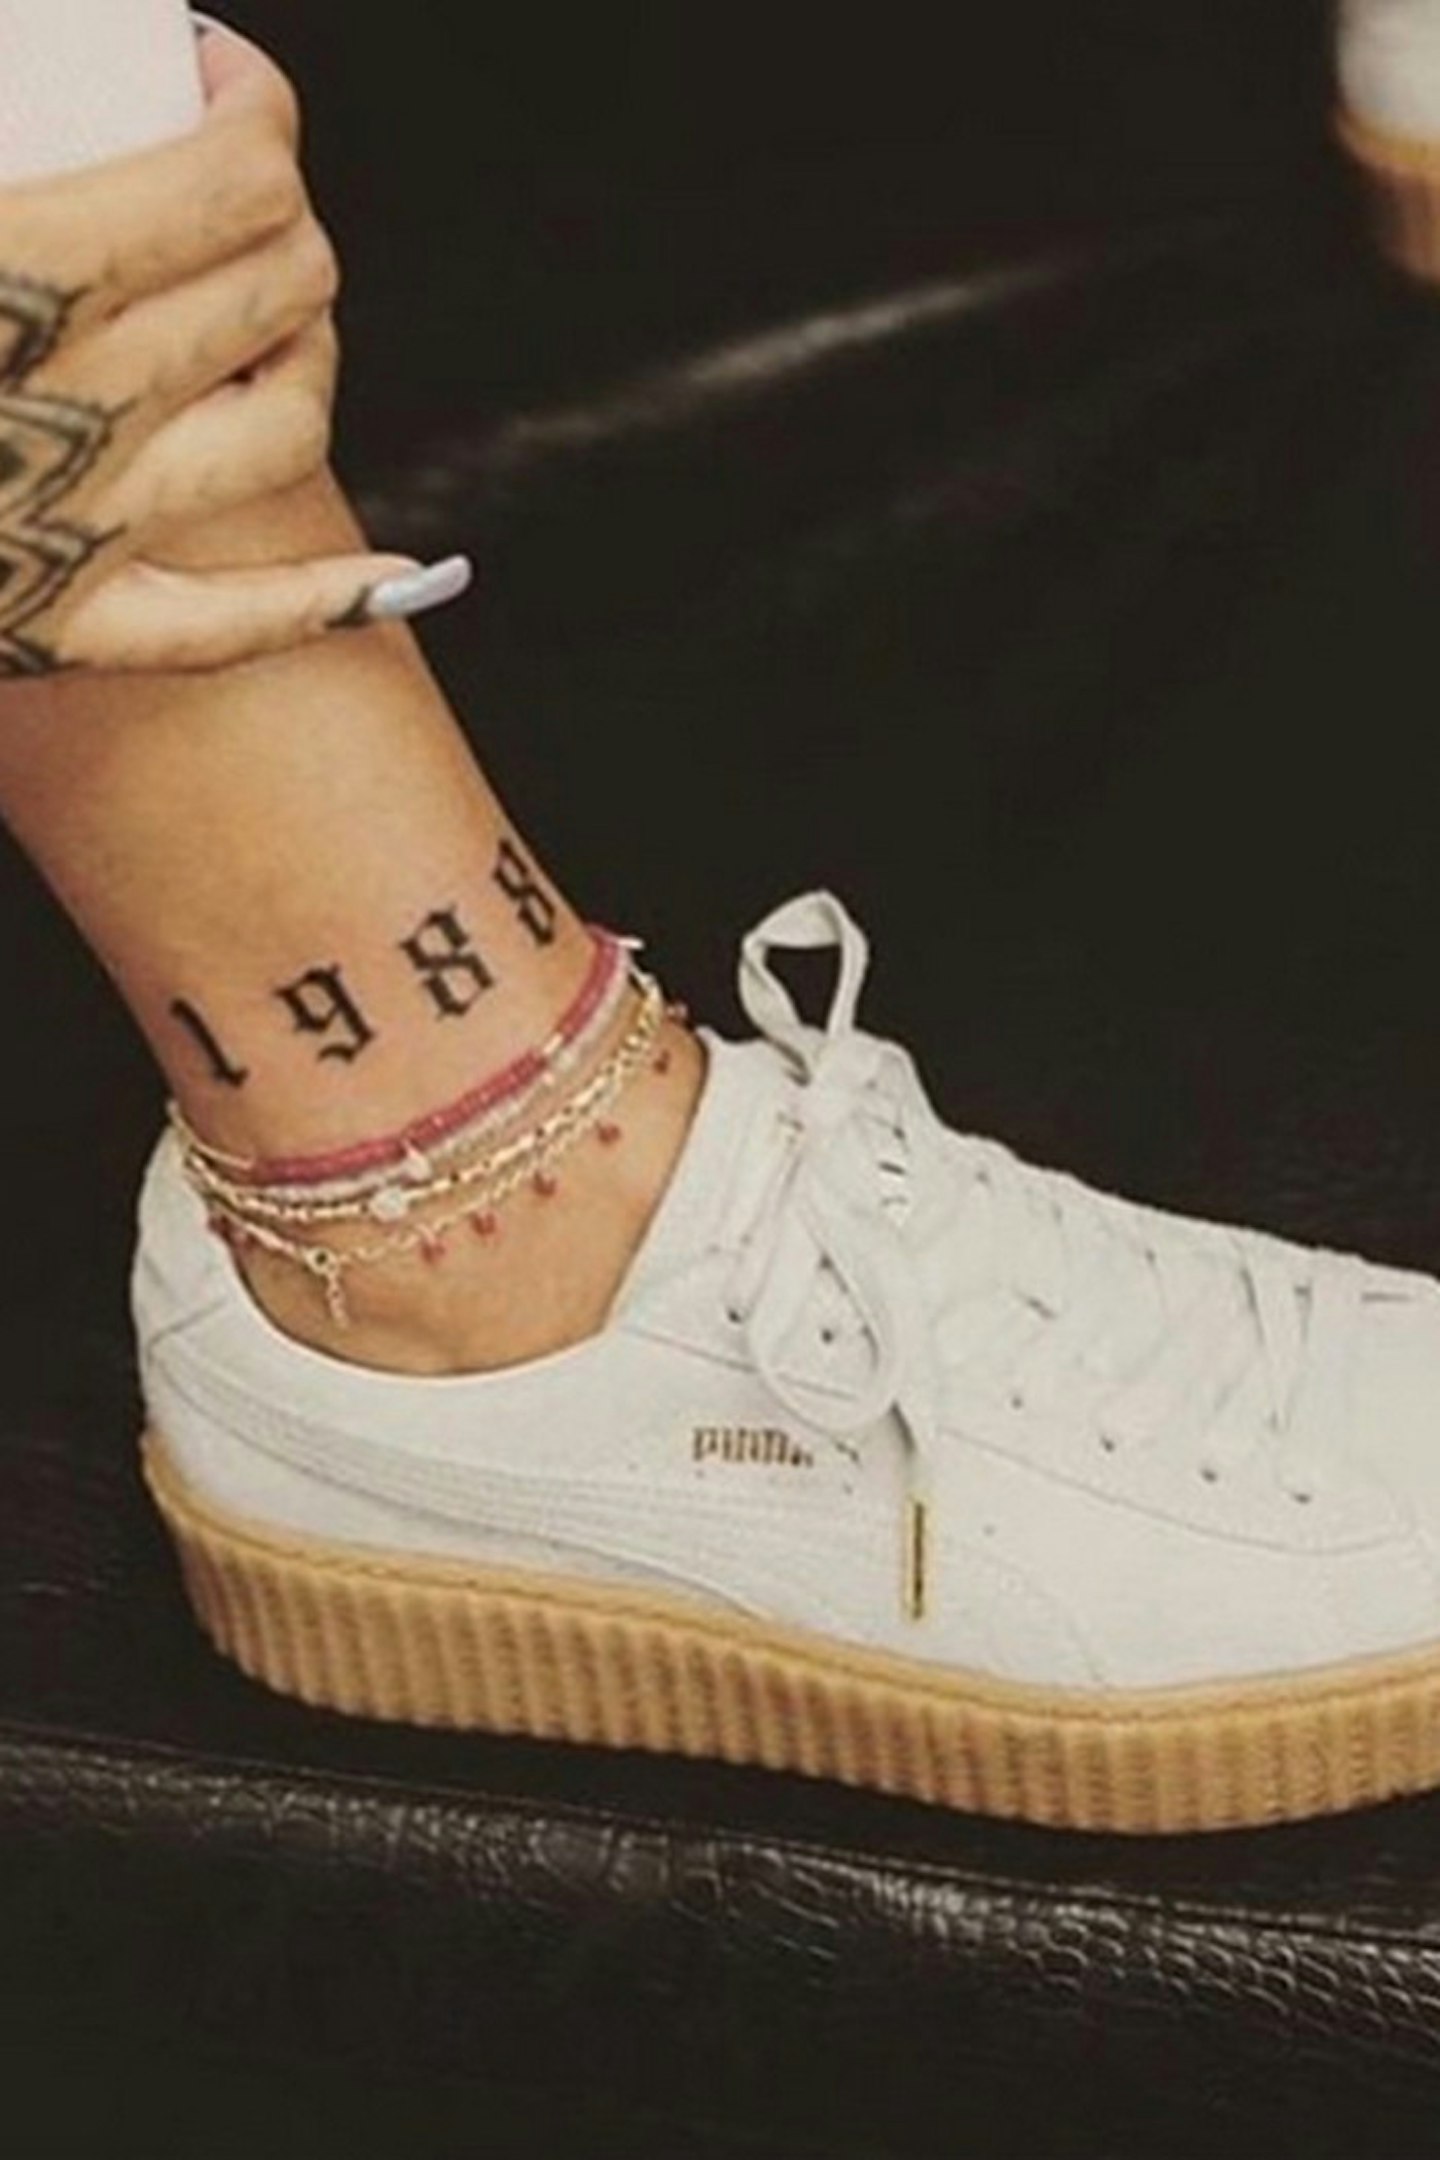 Rihanna-ankle-tattoo